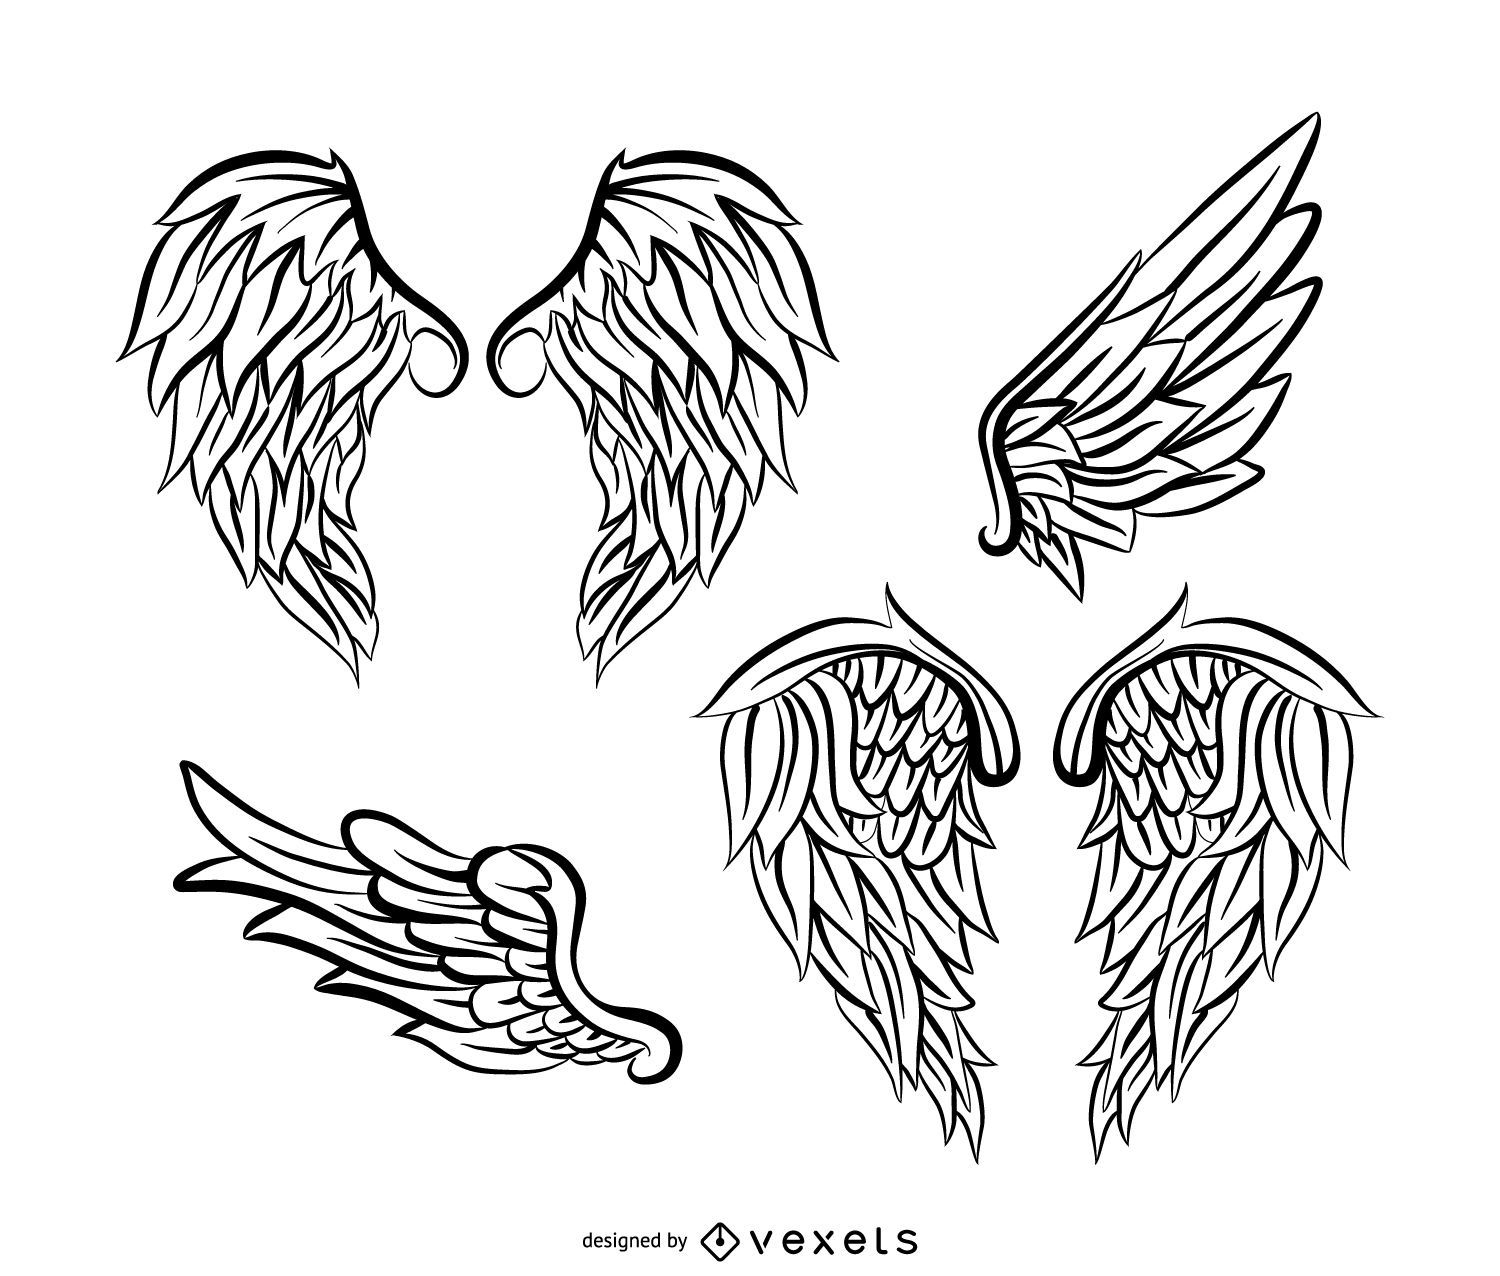 Ilustración de las alas ángel. Diseño: vector de stock (libre de regalías)  2289365543